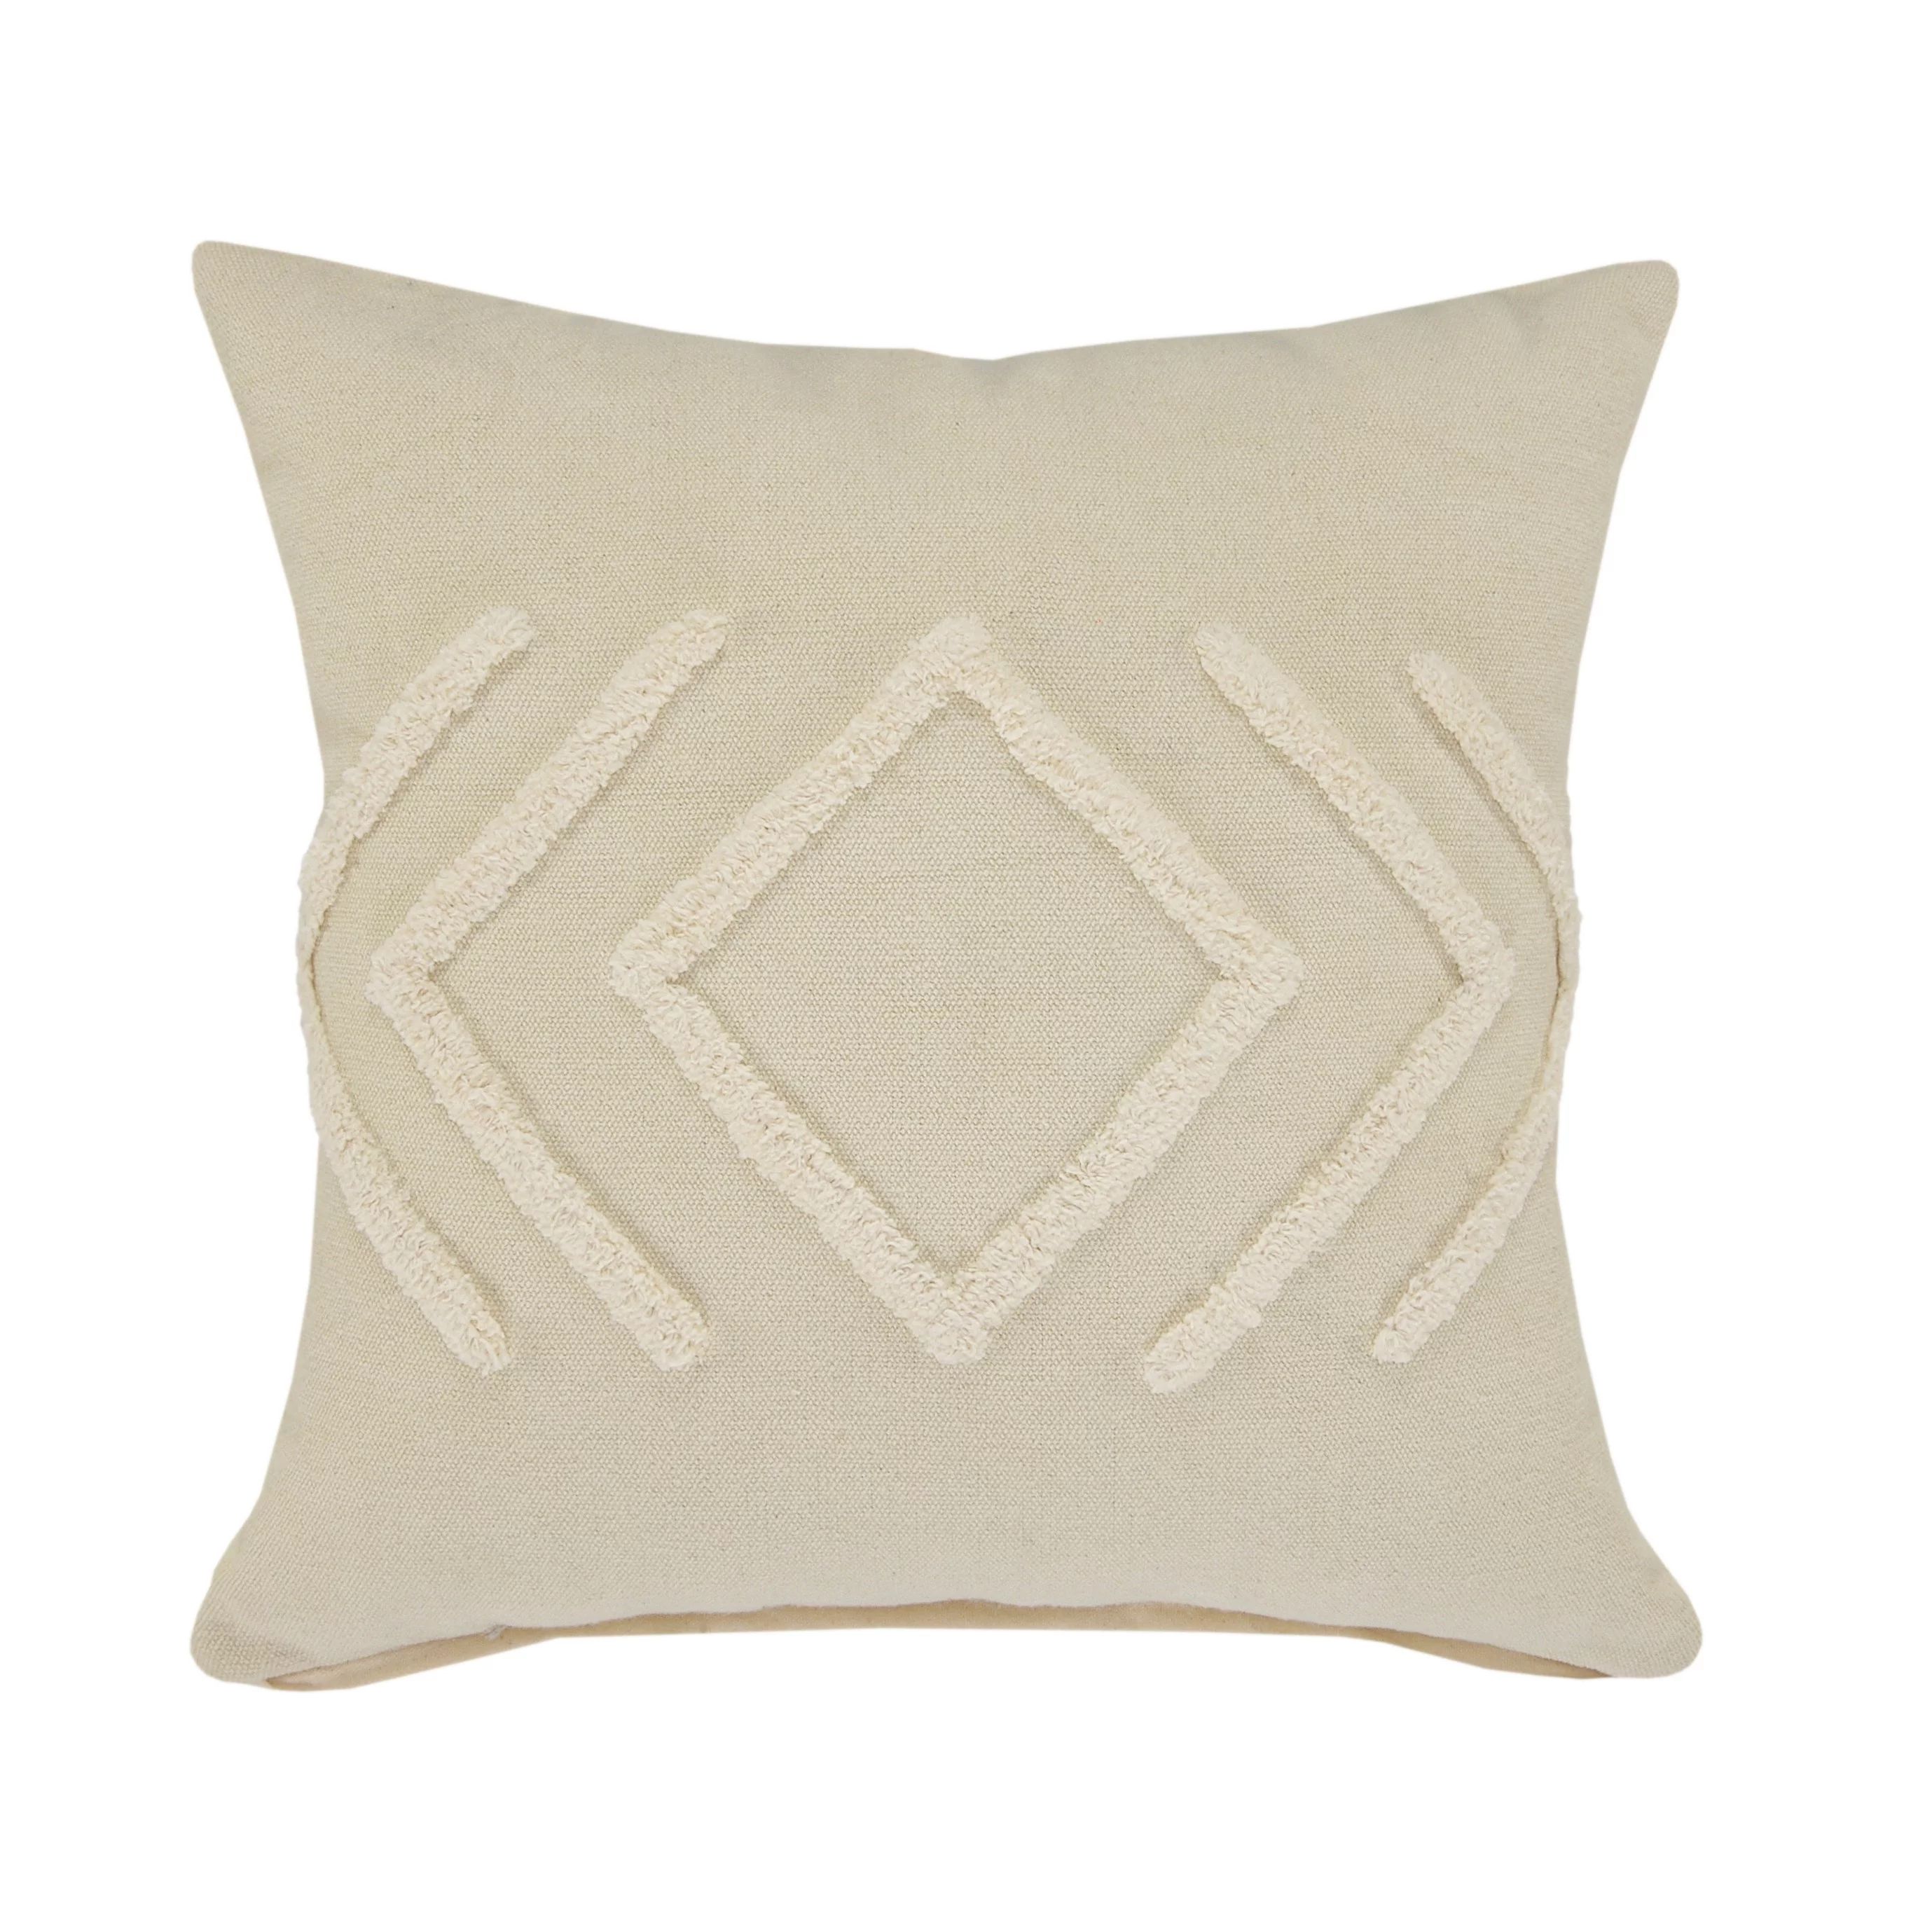 Woven Paths Directional Diamond Throw Pillow, 20" x 20", Off-White | Walmart (US)